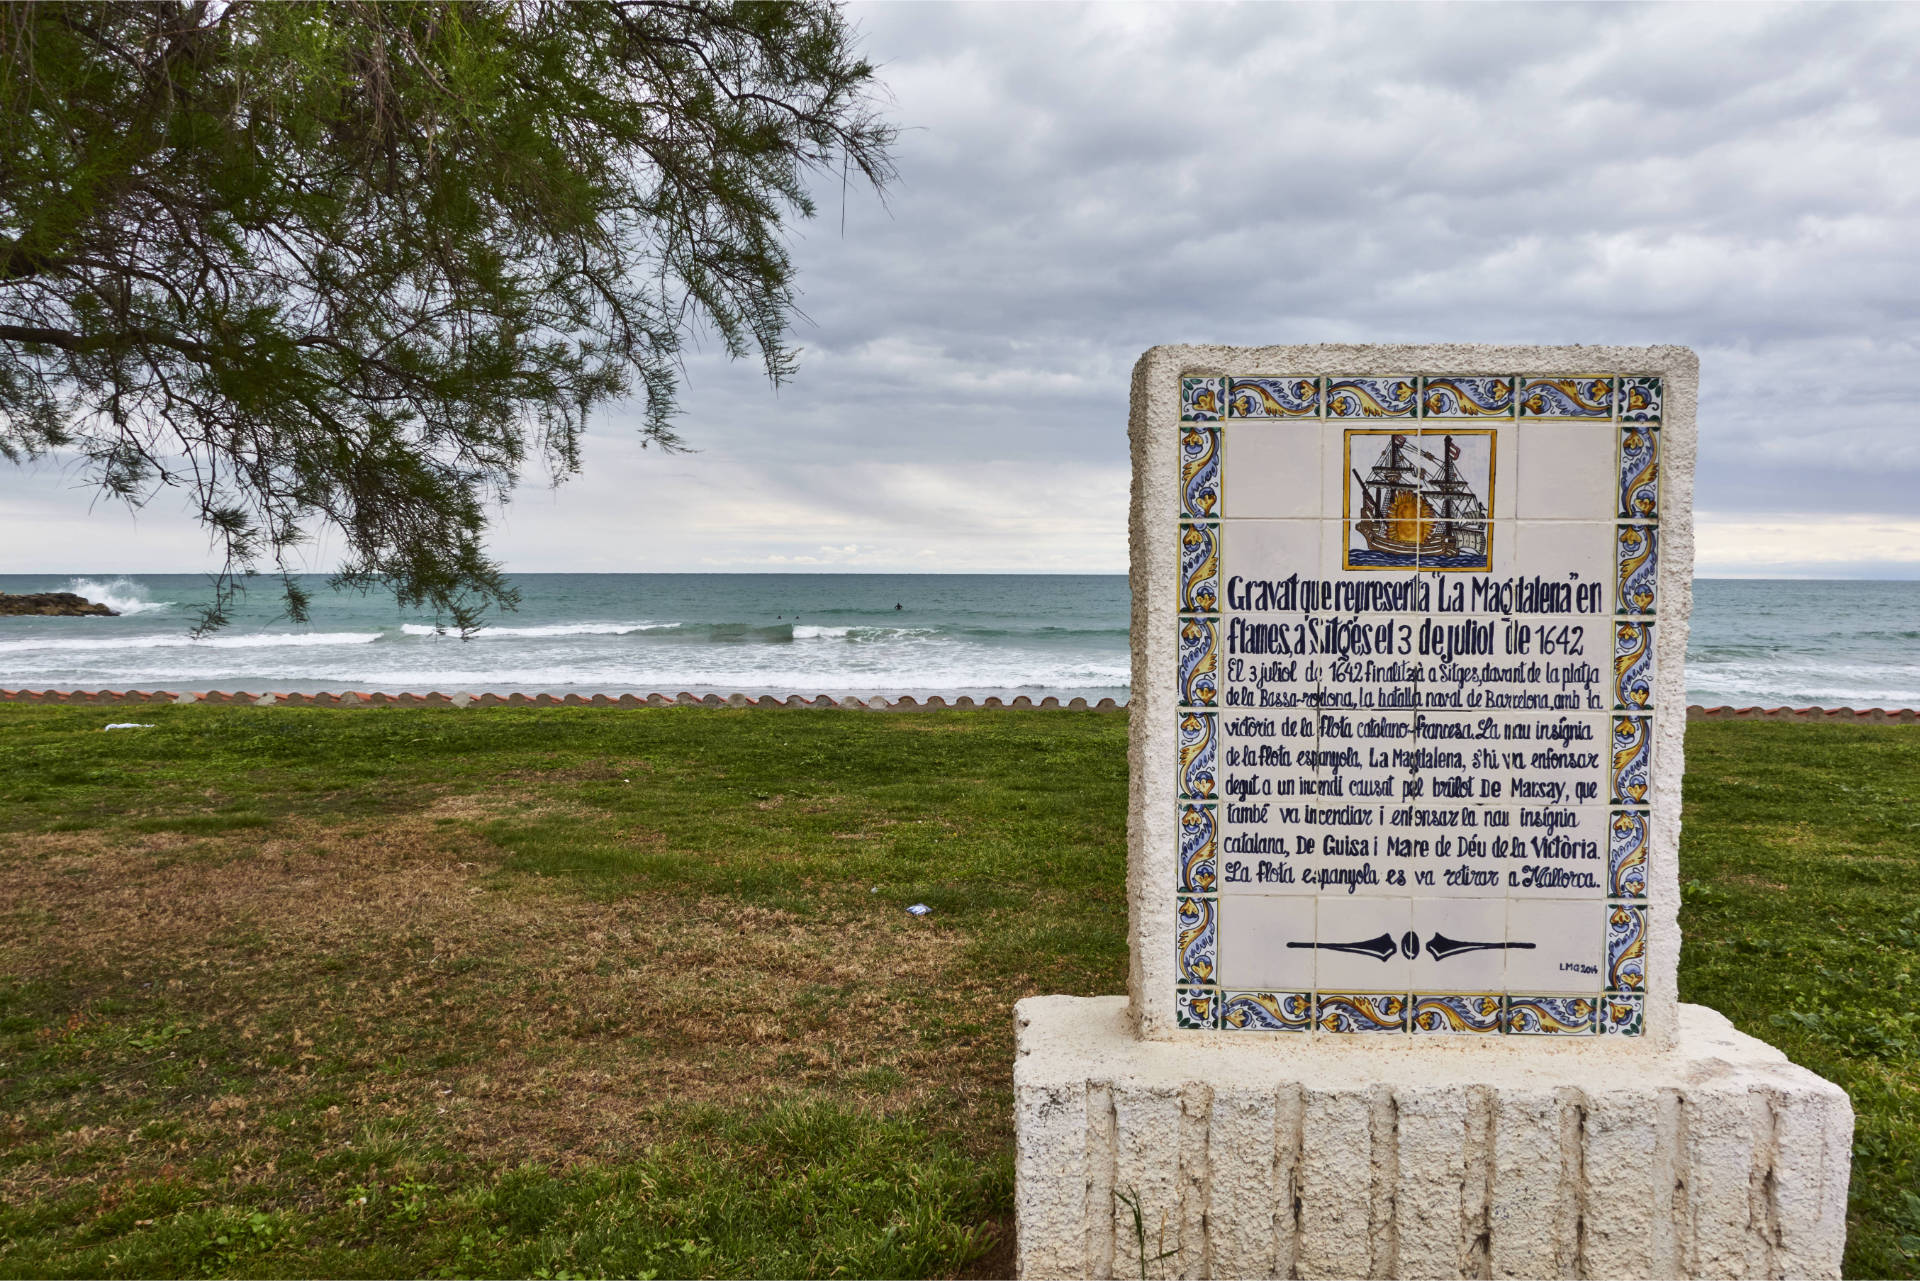 Paseo Maritimo Sitges – Erinnernung an die Seeschlaft gegen die Franzosen vom 3. Juli 1642.